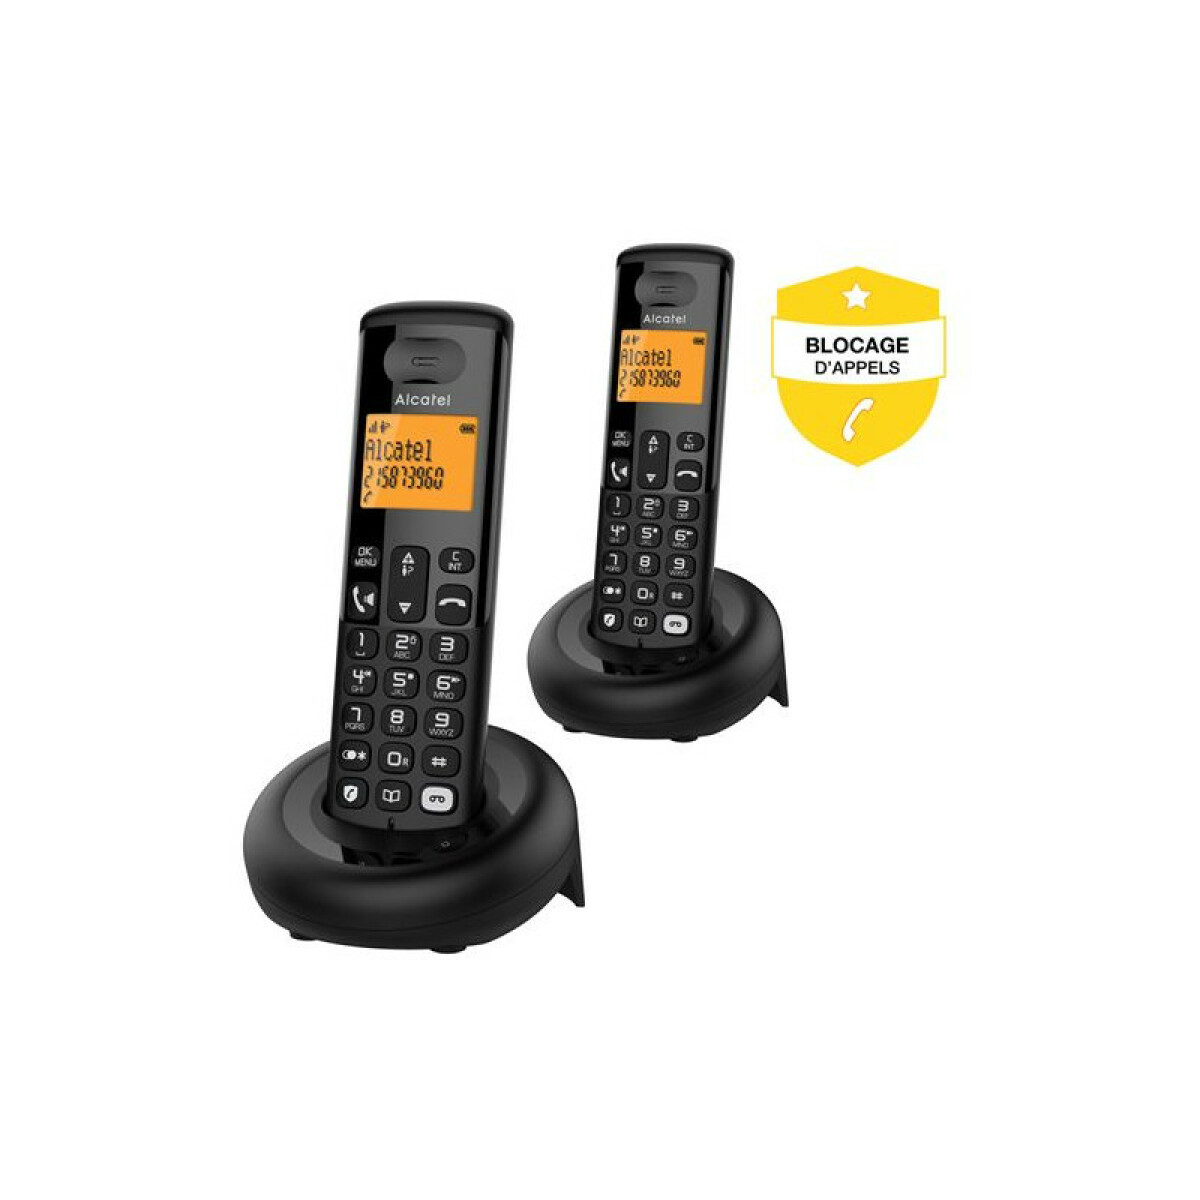 Téléphone fixe sans fil Alcatel E260 S Voice Duo avec Répondeur et Fonction blocage appels publicitaires Noir